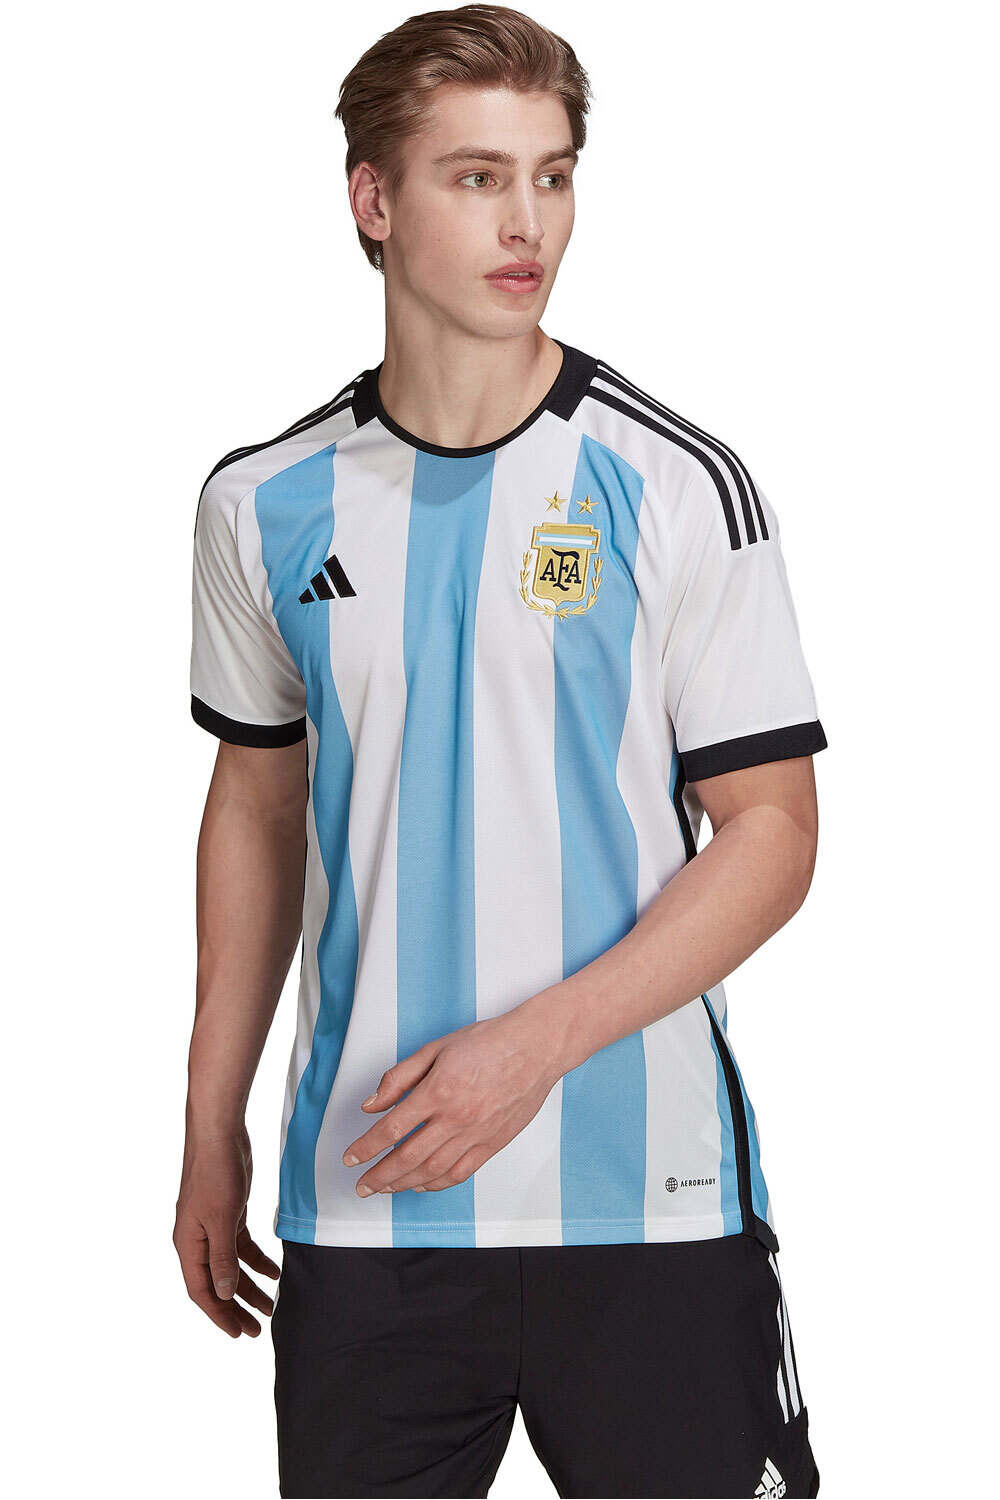 adidas camiseta de fútbol oficiales ARGENTINA 22 H JSY BLCE vista frontal